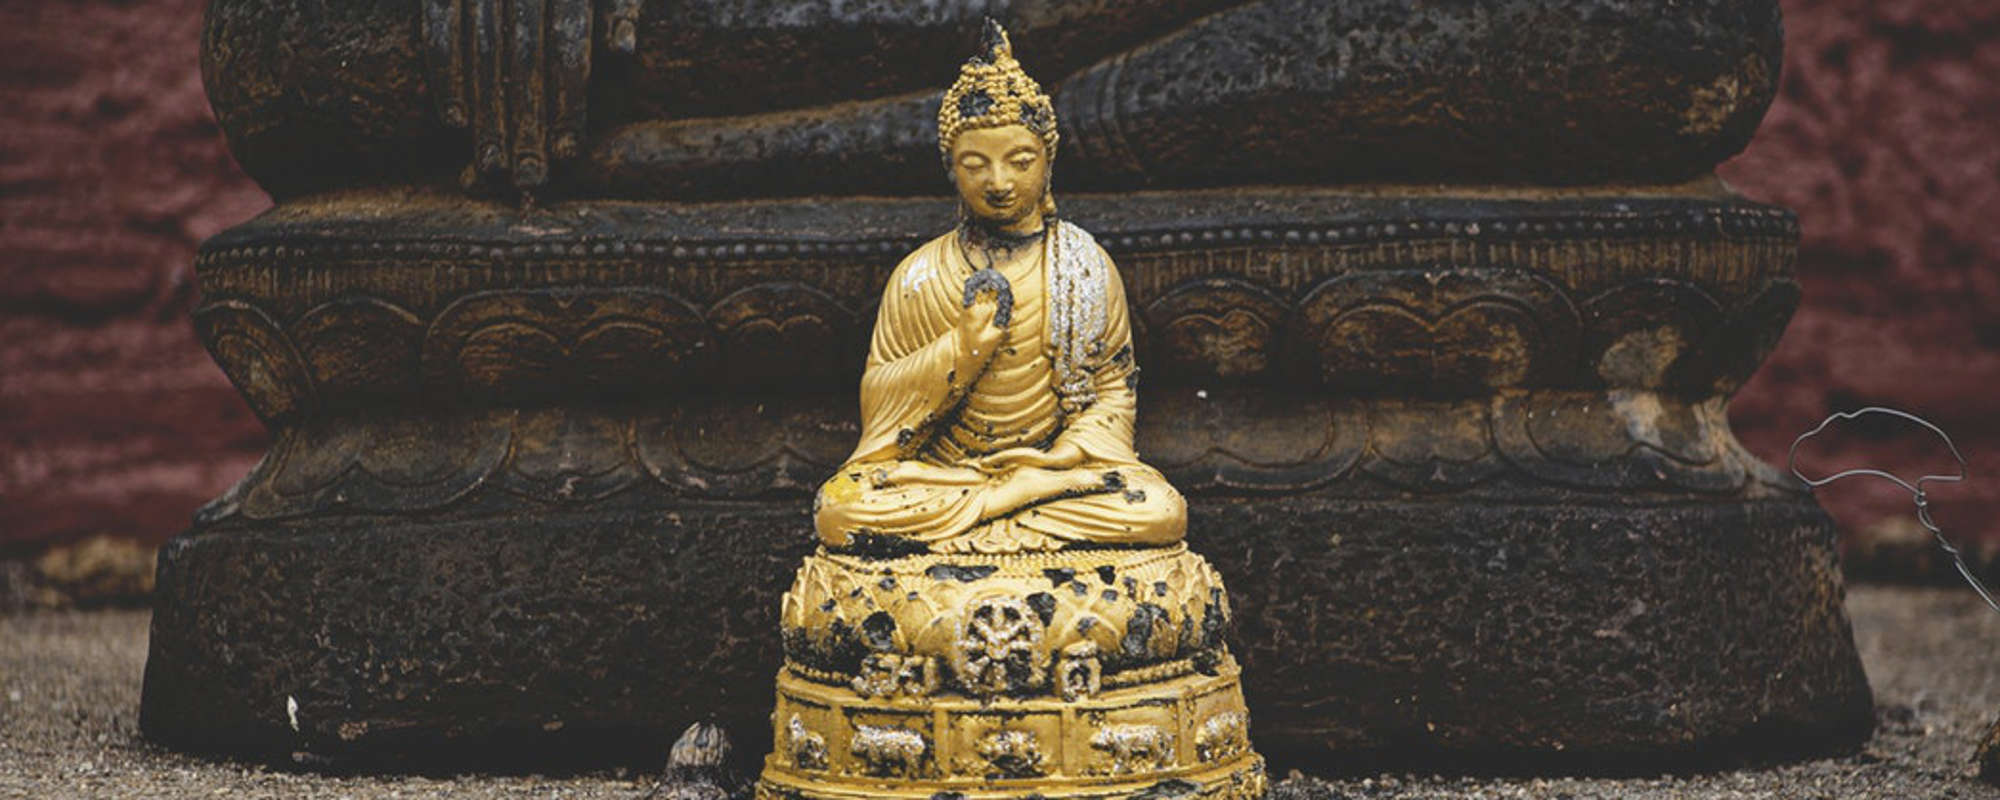 mindful-way---buddha-edited